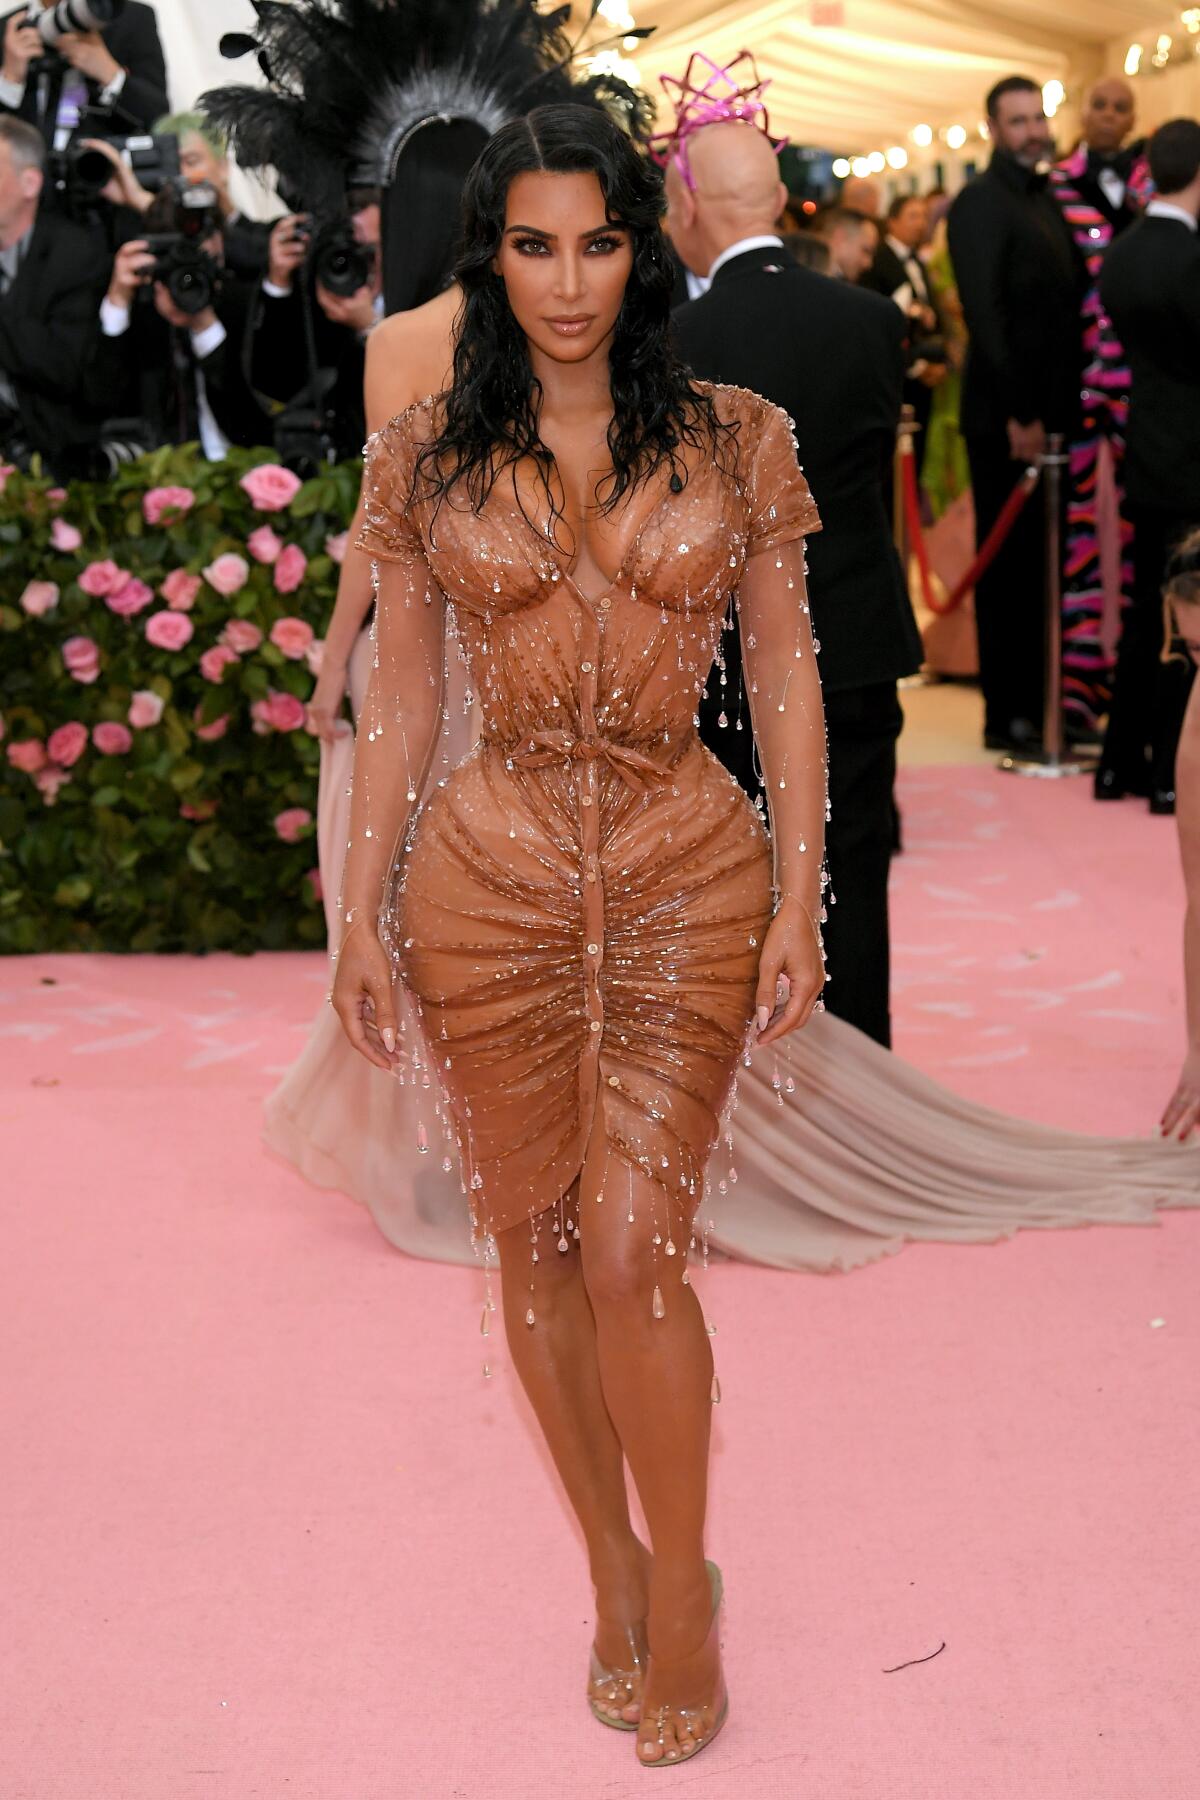 Kim Kardashian West at the 2019 Met Gala